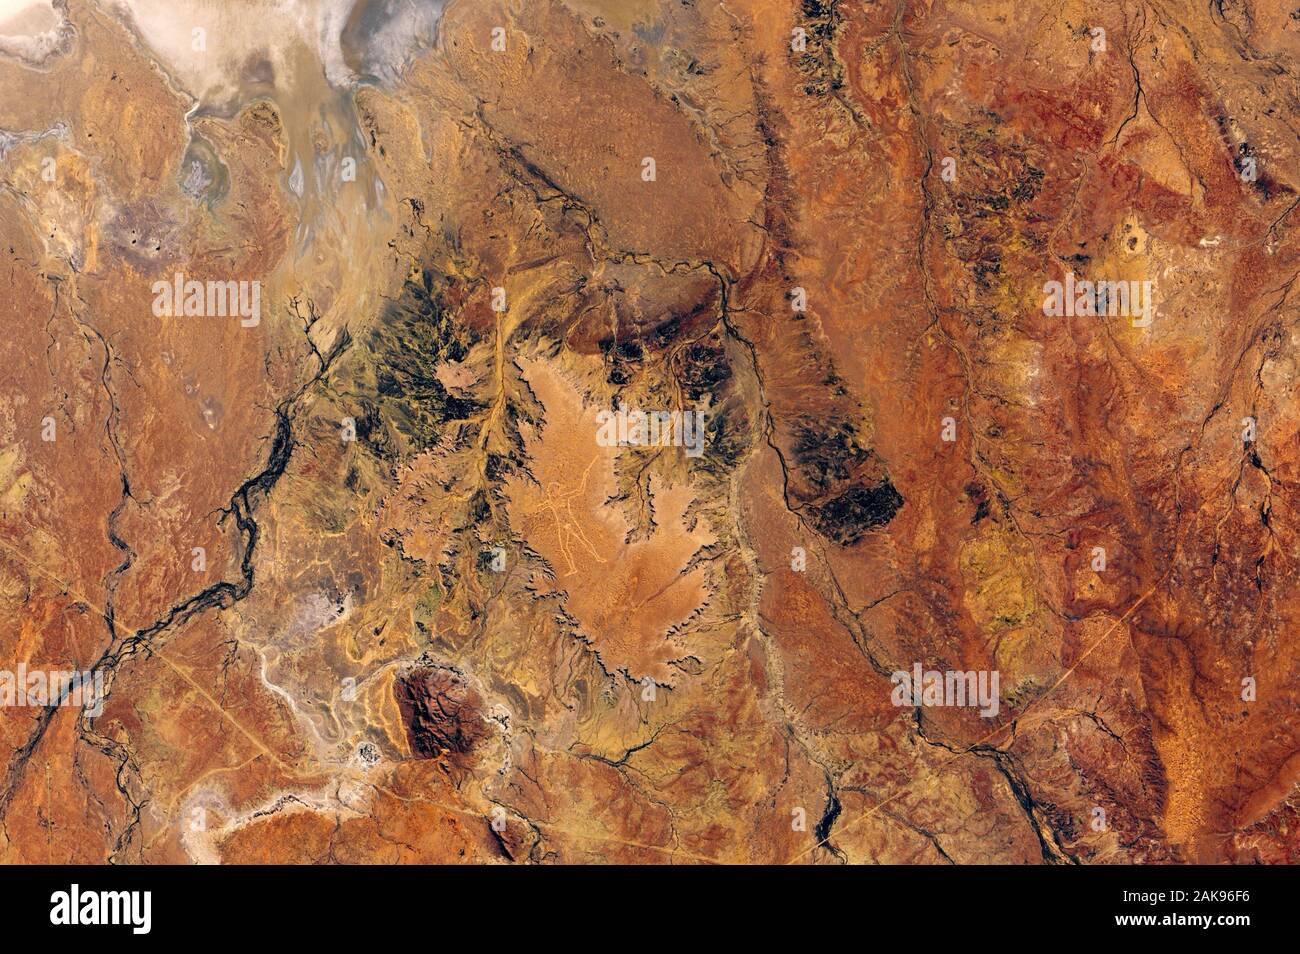 L'homme de Marree - une mystérieuse de l'art de terre a attiré l'attention internationale. Gravé dans un plateau dans l'Australie du Sud vue de l'espace o Banque D'Images